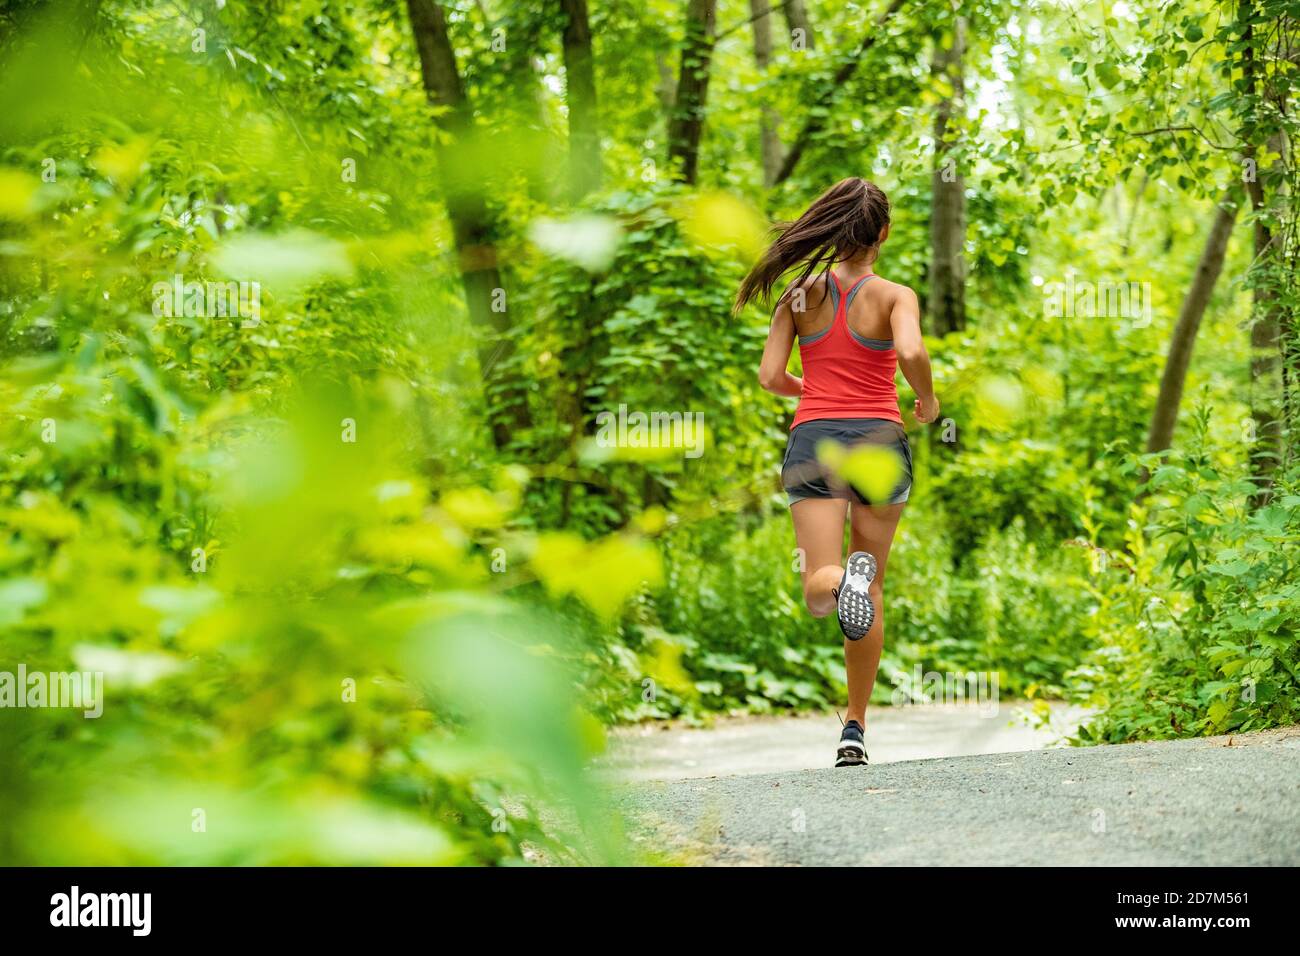 Gesunde aktive Lebensweise Frau Läuferin Joggen in Waldweg Sport Sportler Training im Freien in grüner Natur. Fit Person zu arbeiten. Stockfoto